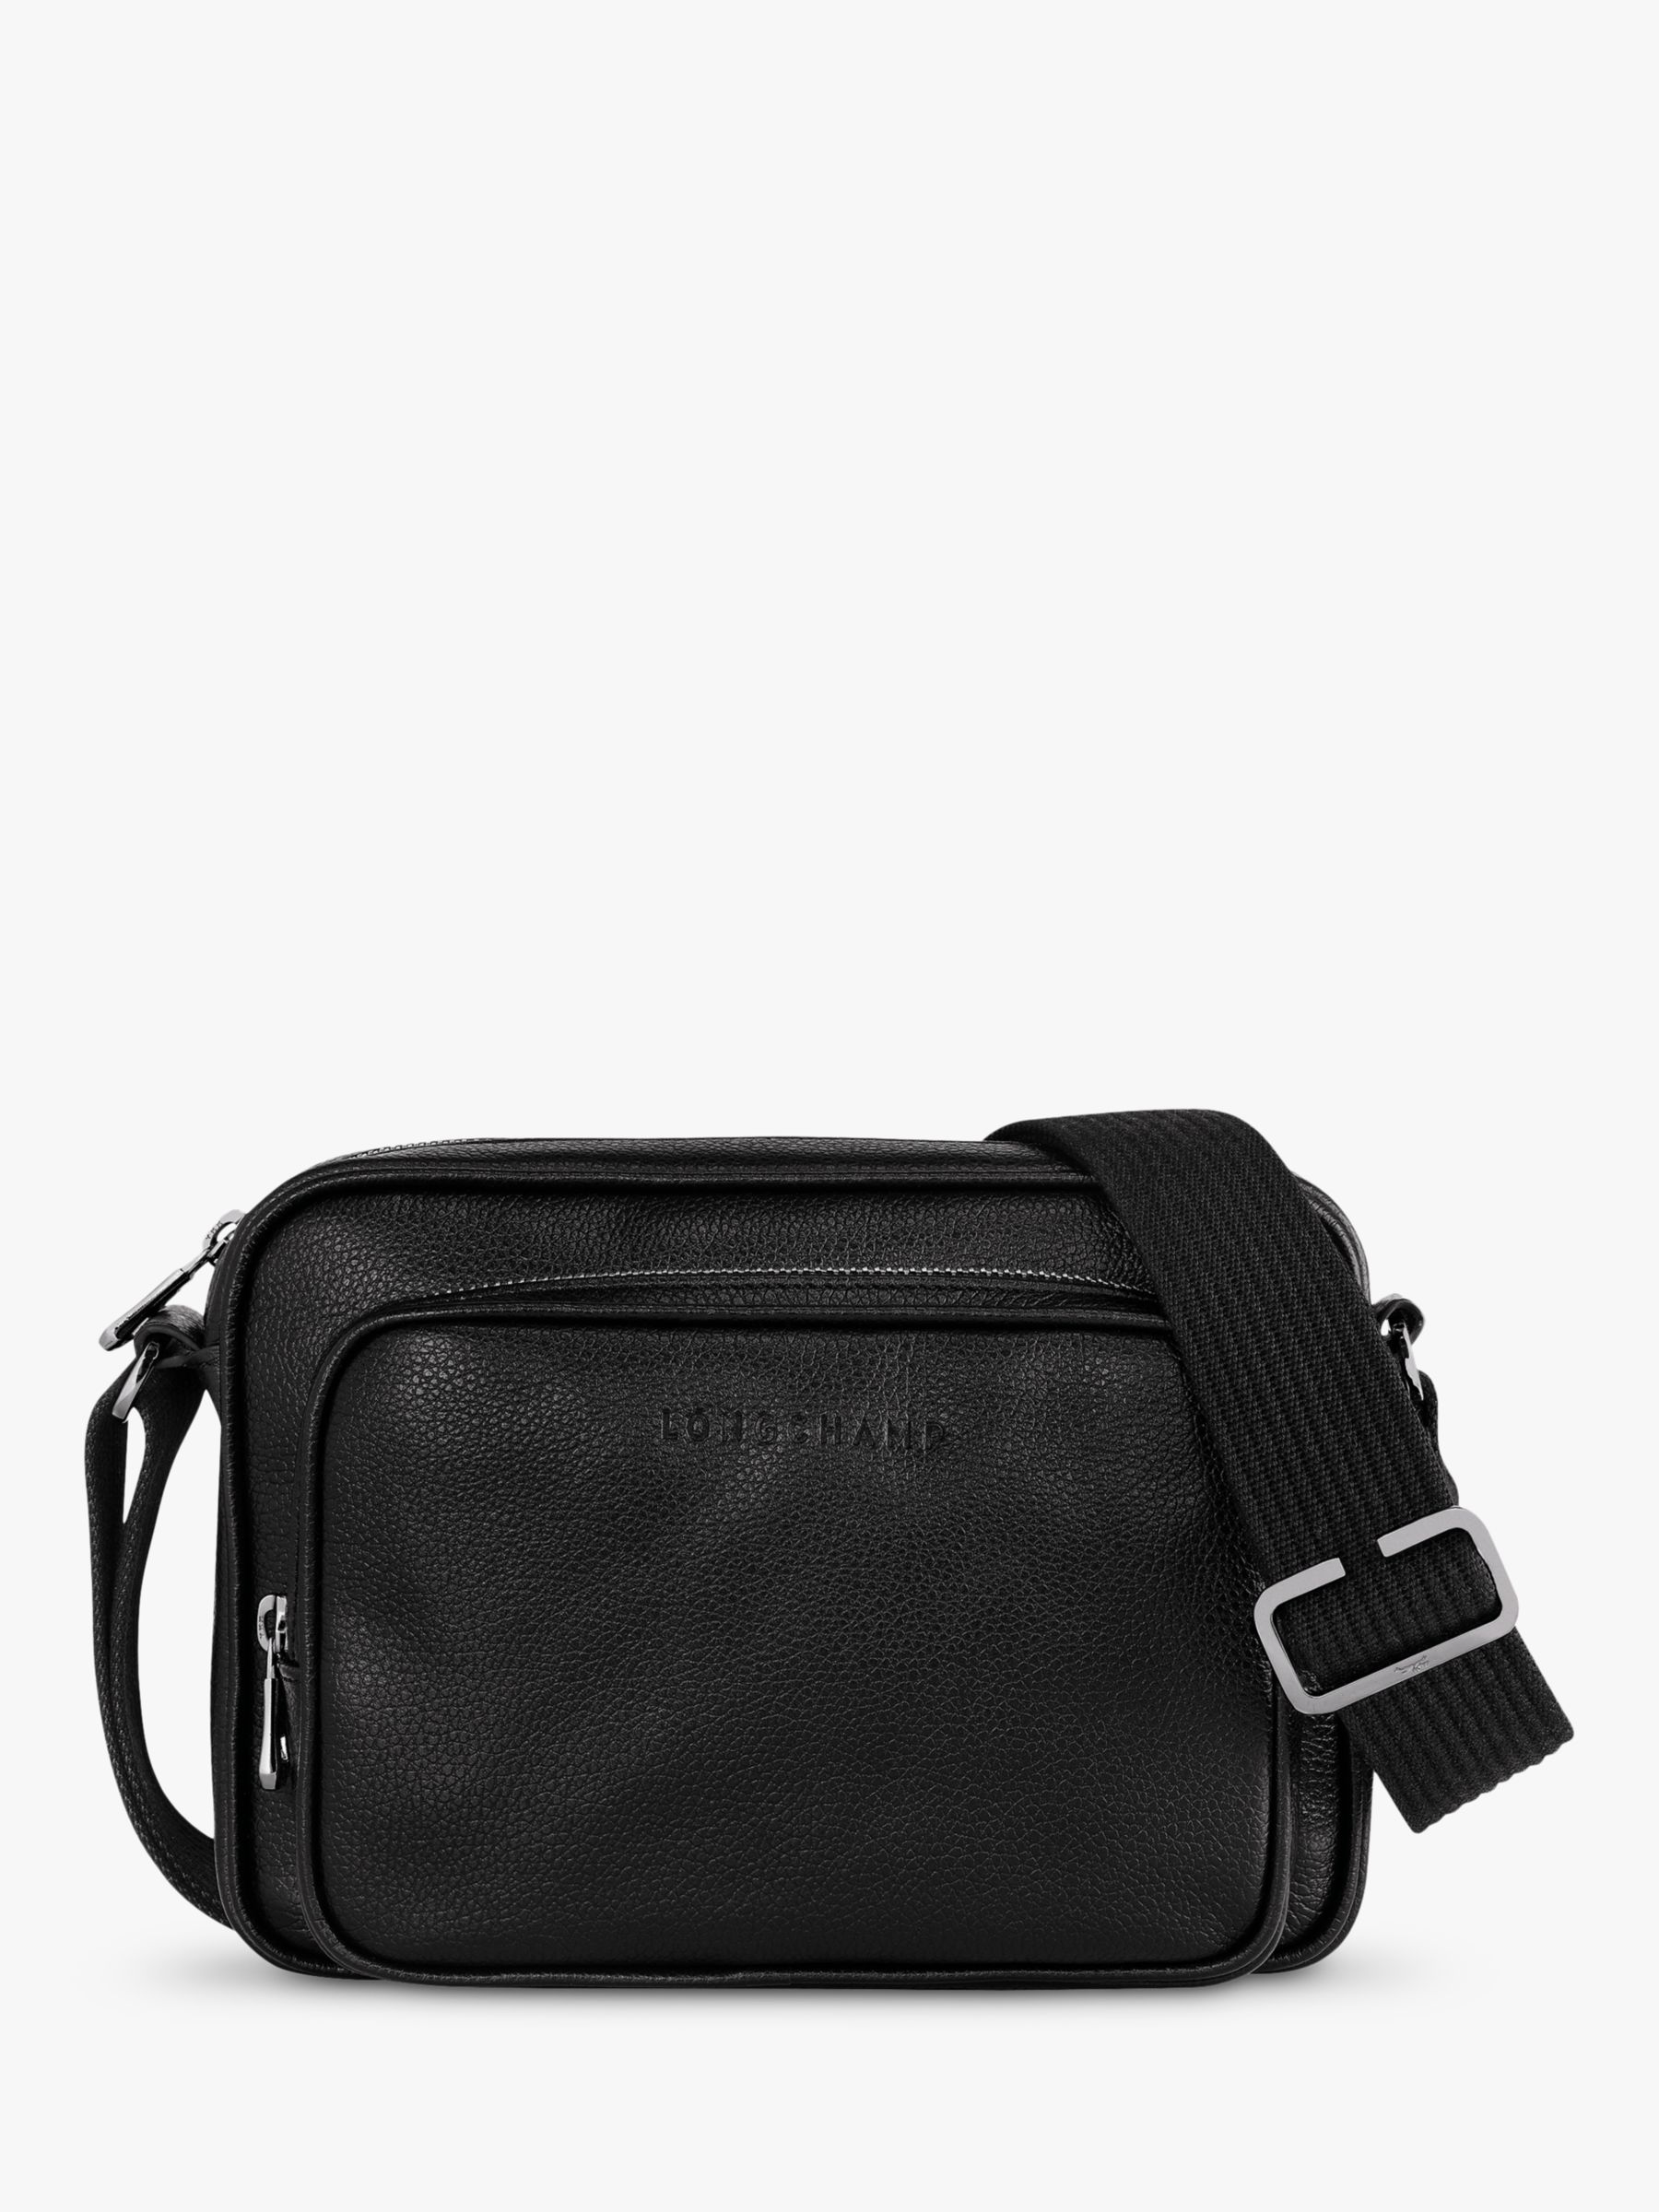 Le Foulonné S Camera bag Black - Leather (20043021047)